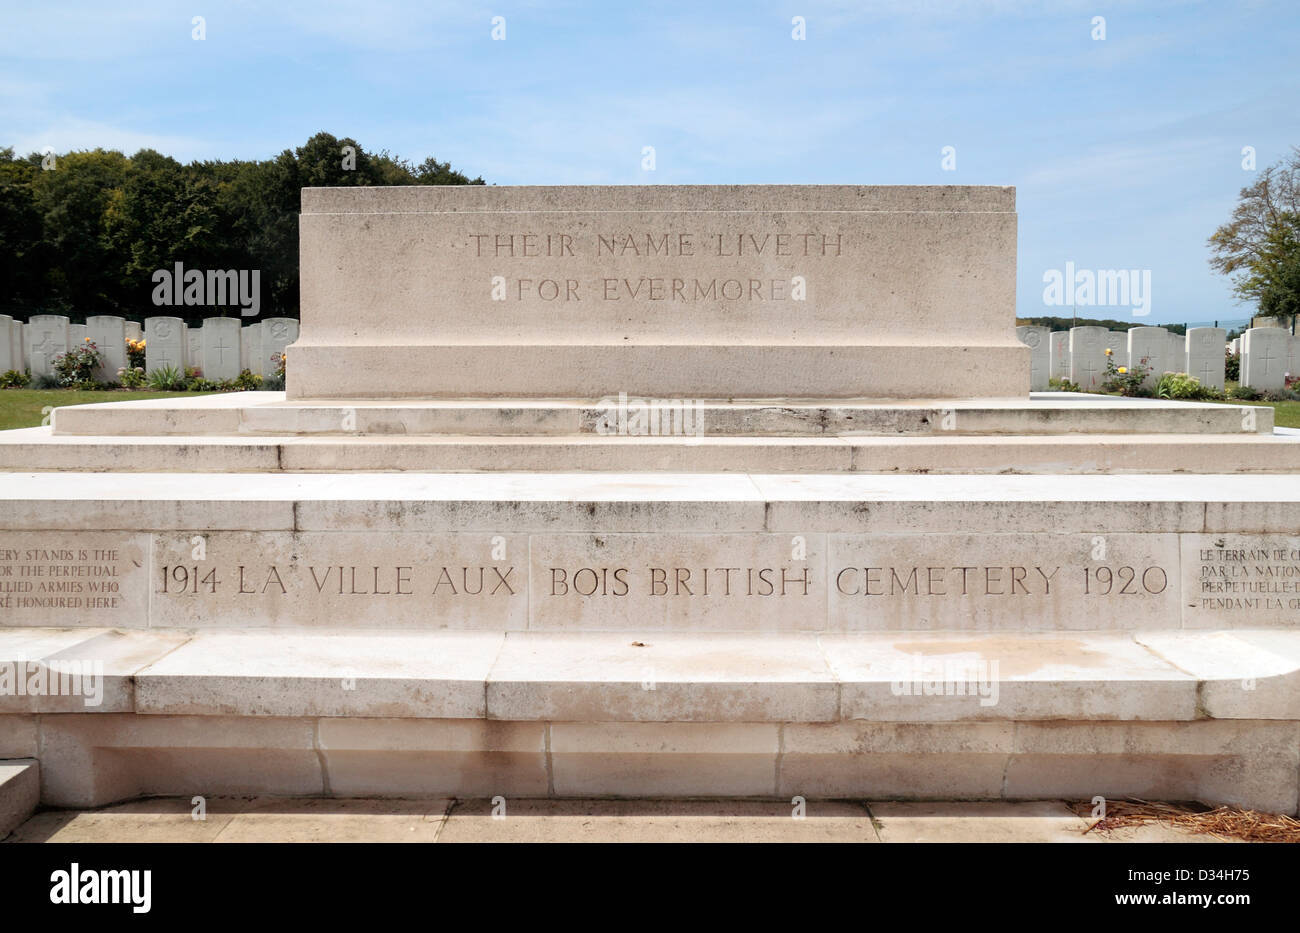 La pierre du Souvenir dans la CSGC La ville aux bois British Cemetery, près de Reims, France. Banque D'Images